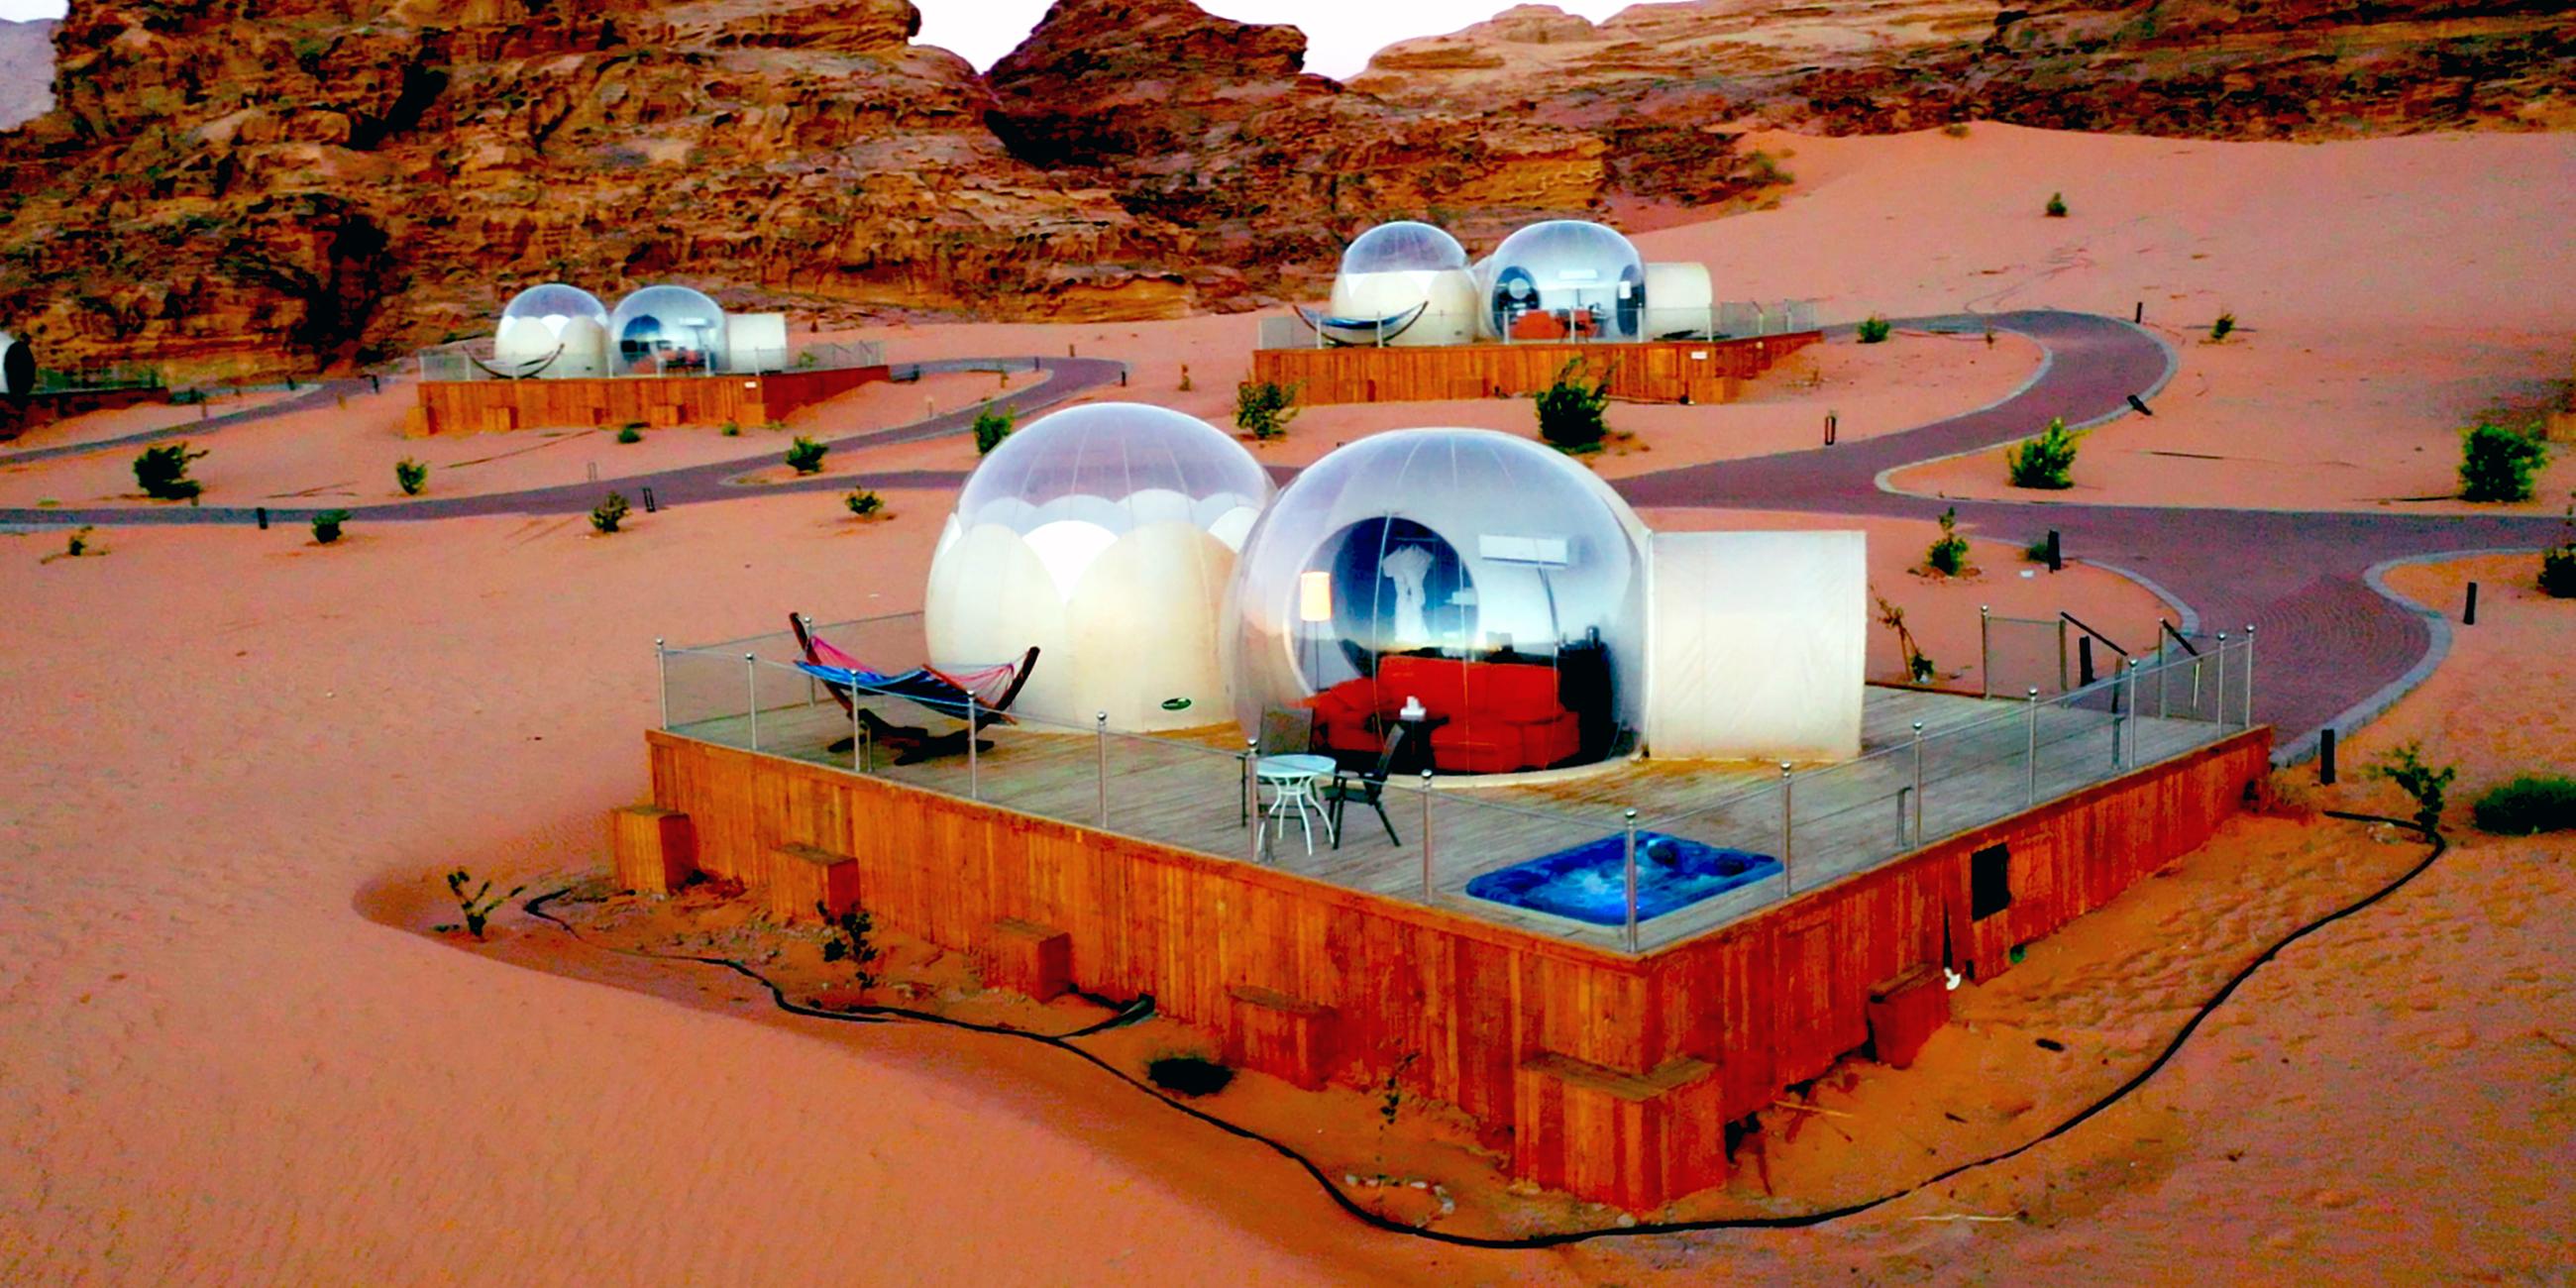 Transparente Kuppeln stehen auf Holzterrassen inmitten einer Wüsten-Berglandschaft.